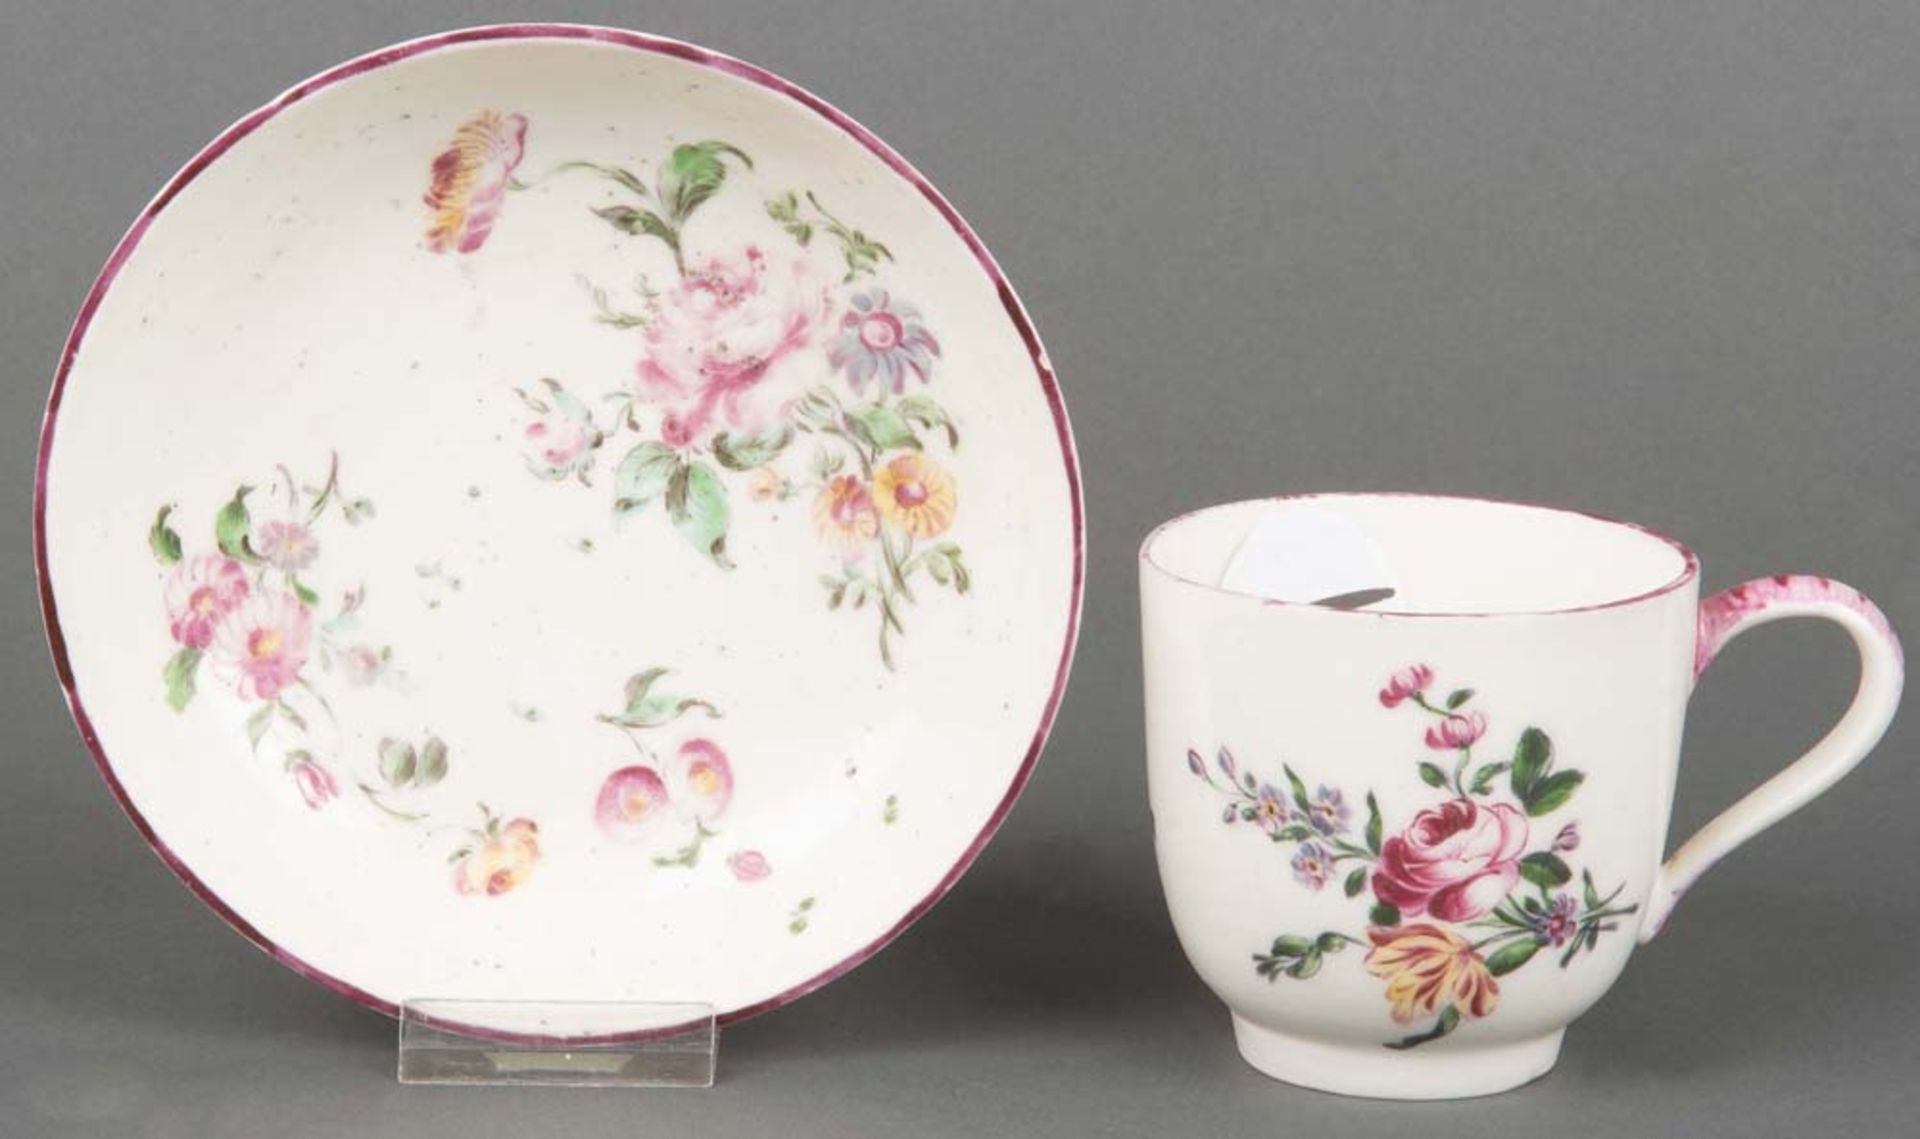 Bechertasse und Unterschale. Mennecy 1770. Porzellan, bunt floral bemalt, geritzte D.V. Marke.